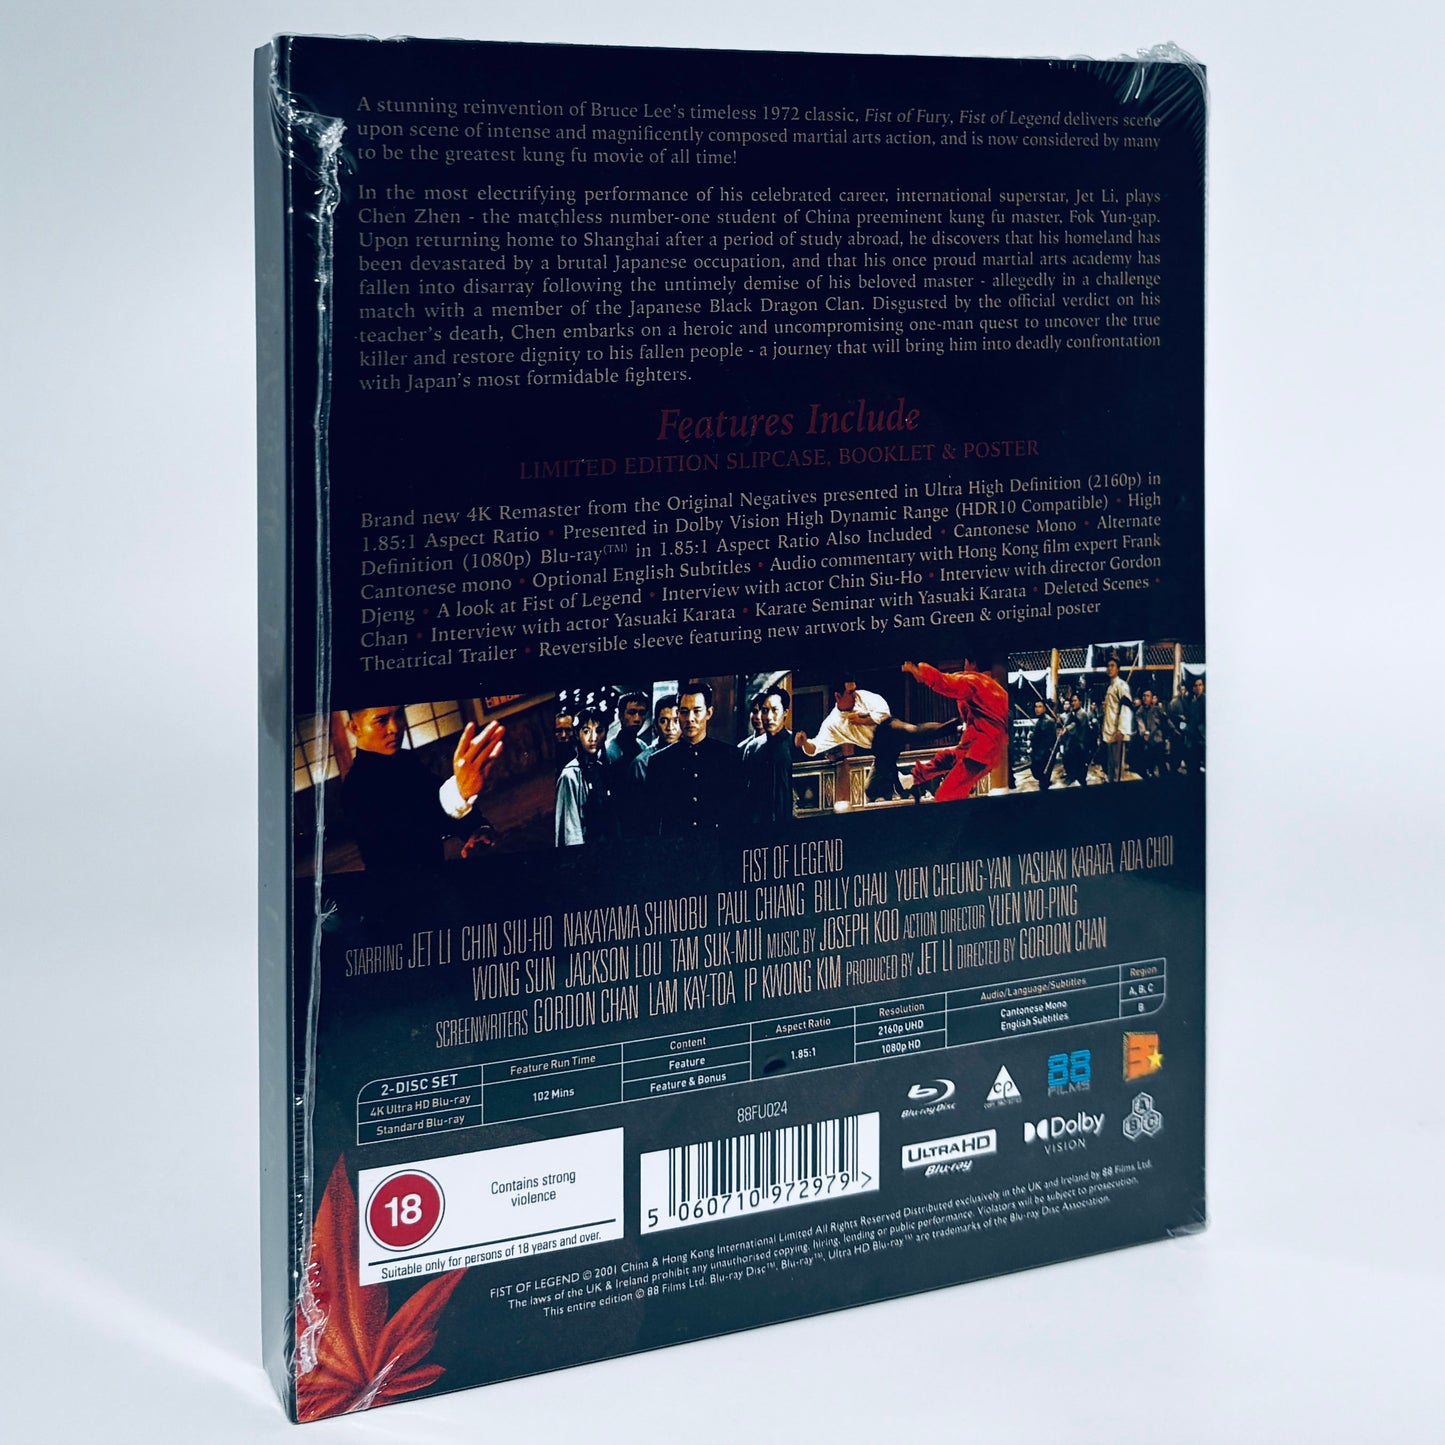 Fist of Legend Jet Li 4K UHD Blu-ray 88 Films Ultra HD Yuen Woo Ping Gordon Chan